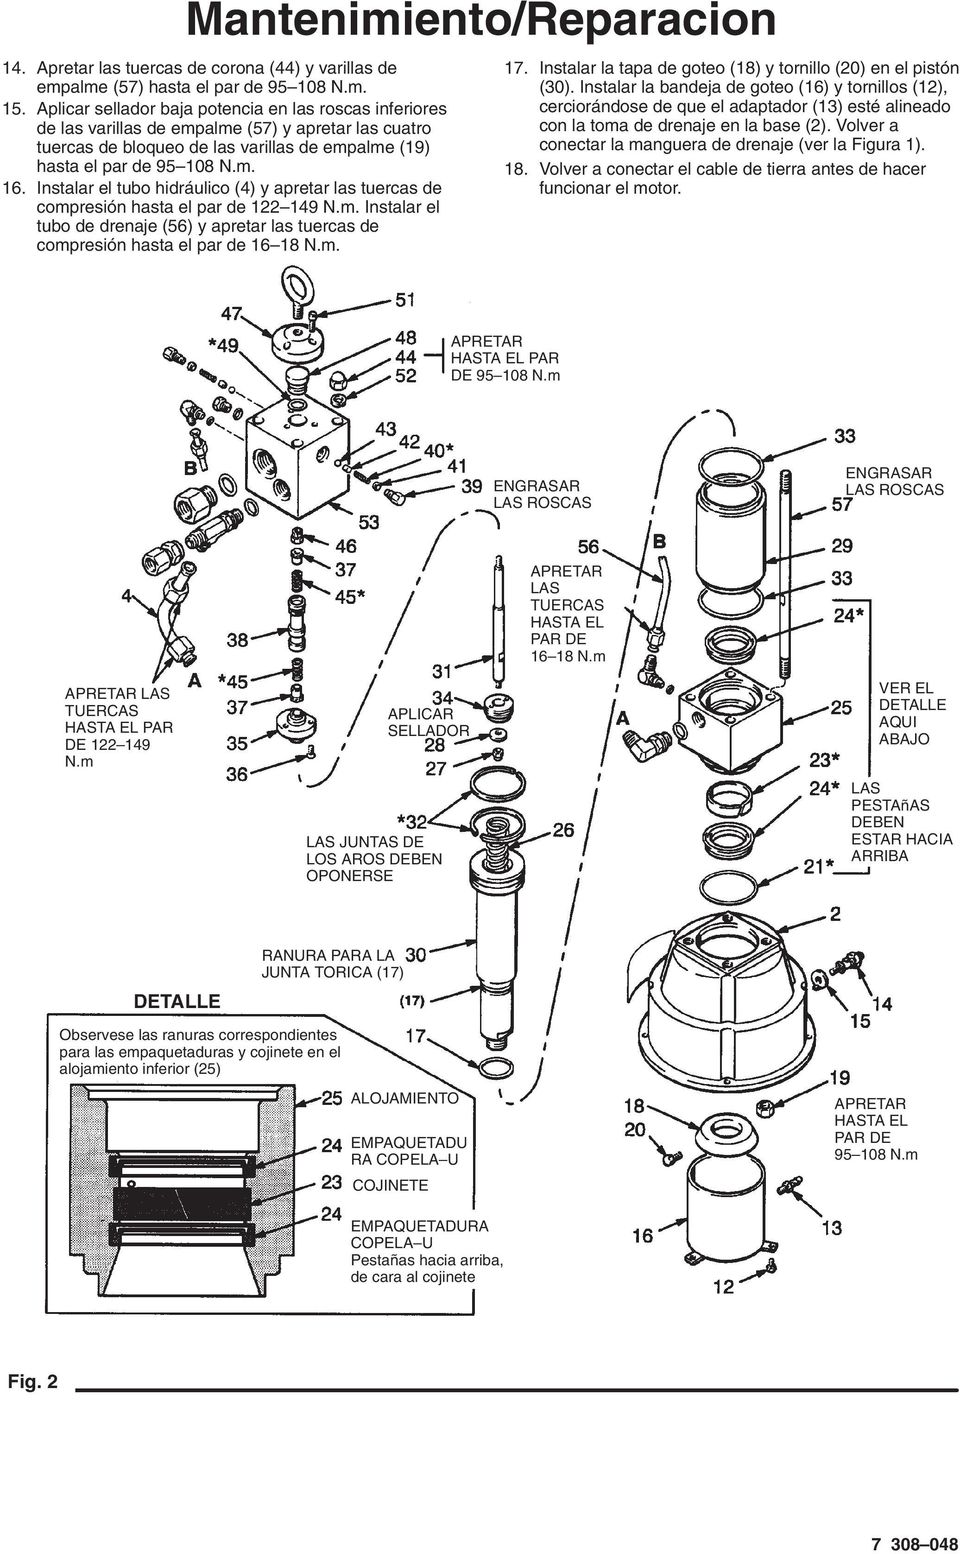 Instalar el tubo hidráulico (4) y apretar las tuercas de compresión hasta el par de 122 149 N.m. Instalar el tubo de drenaje (56) y apretar las tuercas de compresión hasta el par de 16 18 N.m. 17.